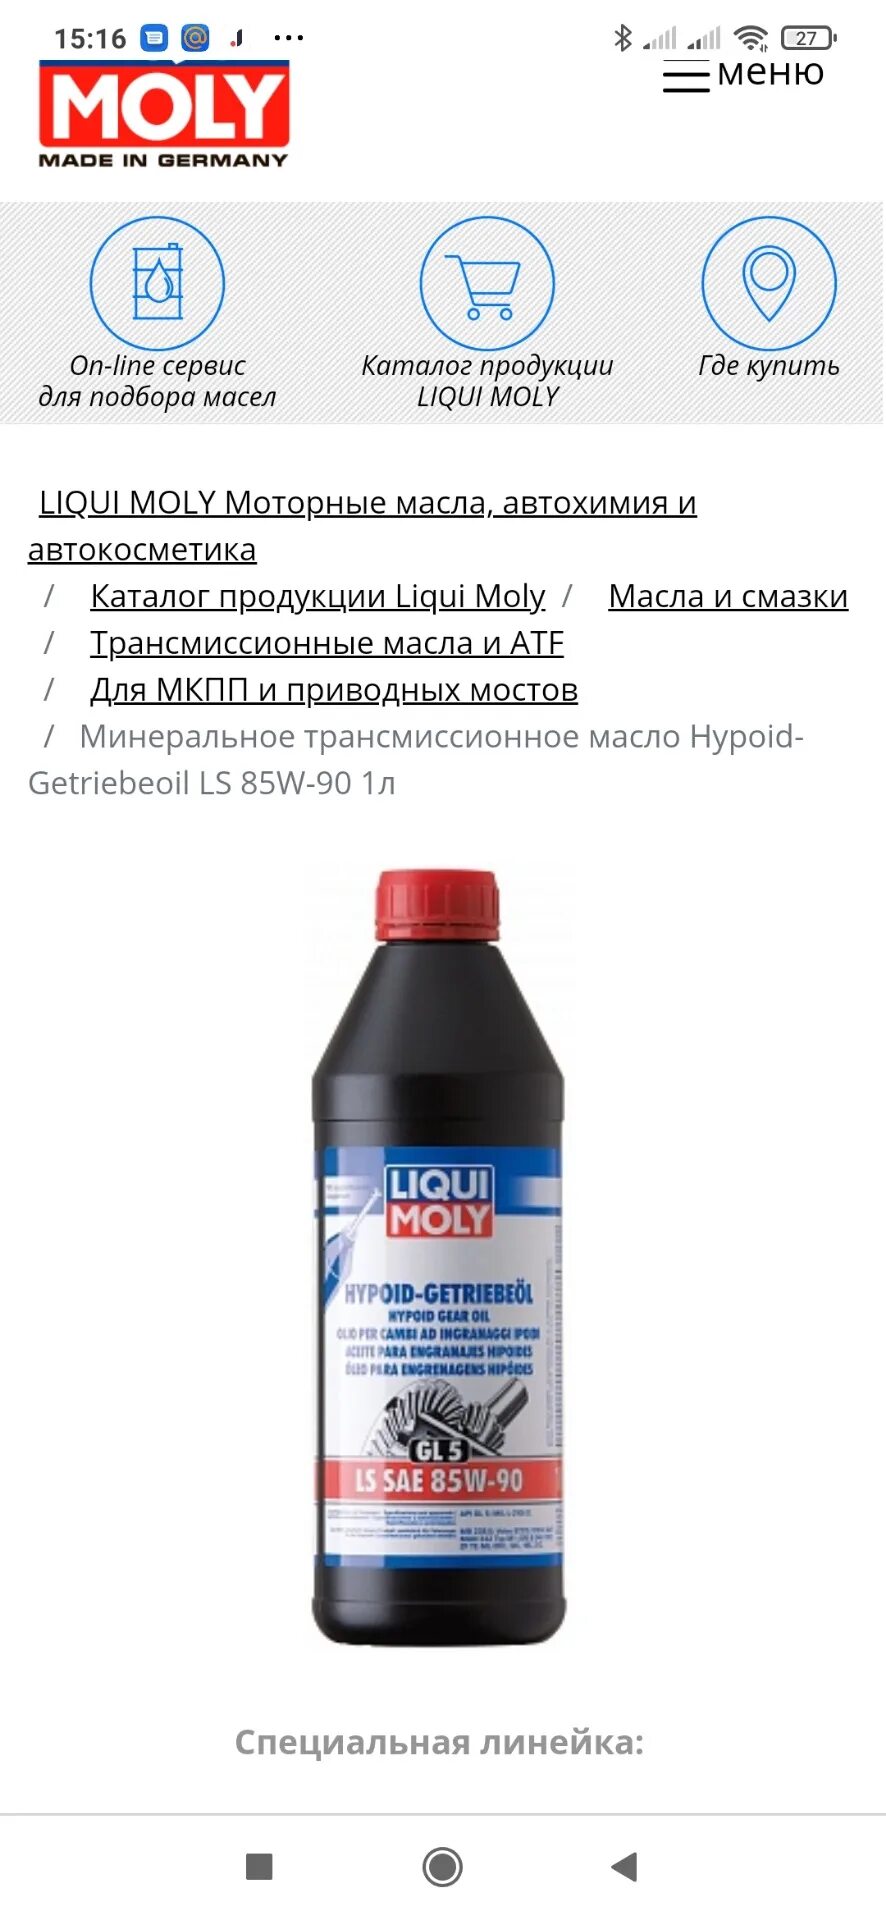 Трансмиссионное масло Liqui Moly 1956 Hypoid-Getriebeoil SAE 85w90 1 л. Трансмиссионное масло gl4 Ликви моли 75w85. Hypoid-Getriebeoil LS 85w-90 gl-5. Ликви моли 85w90 gl-5. Трансмиссионное масло ls gl 5